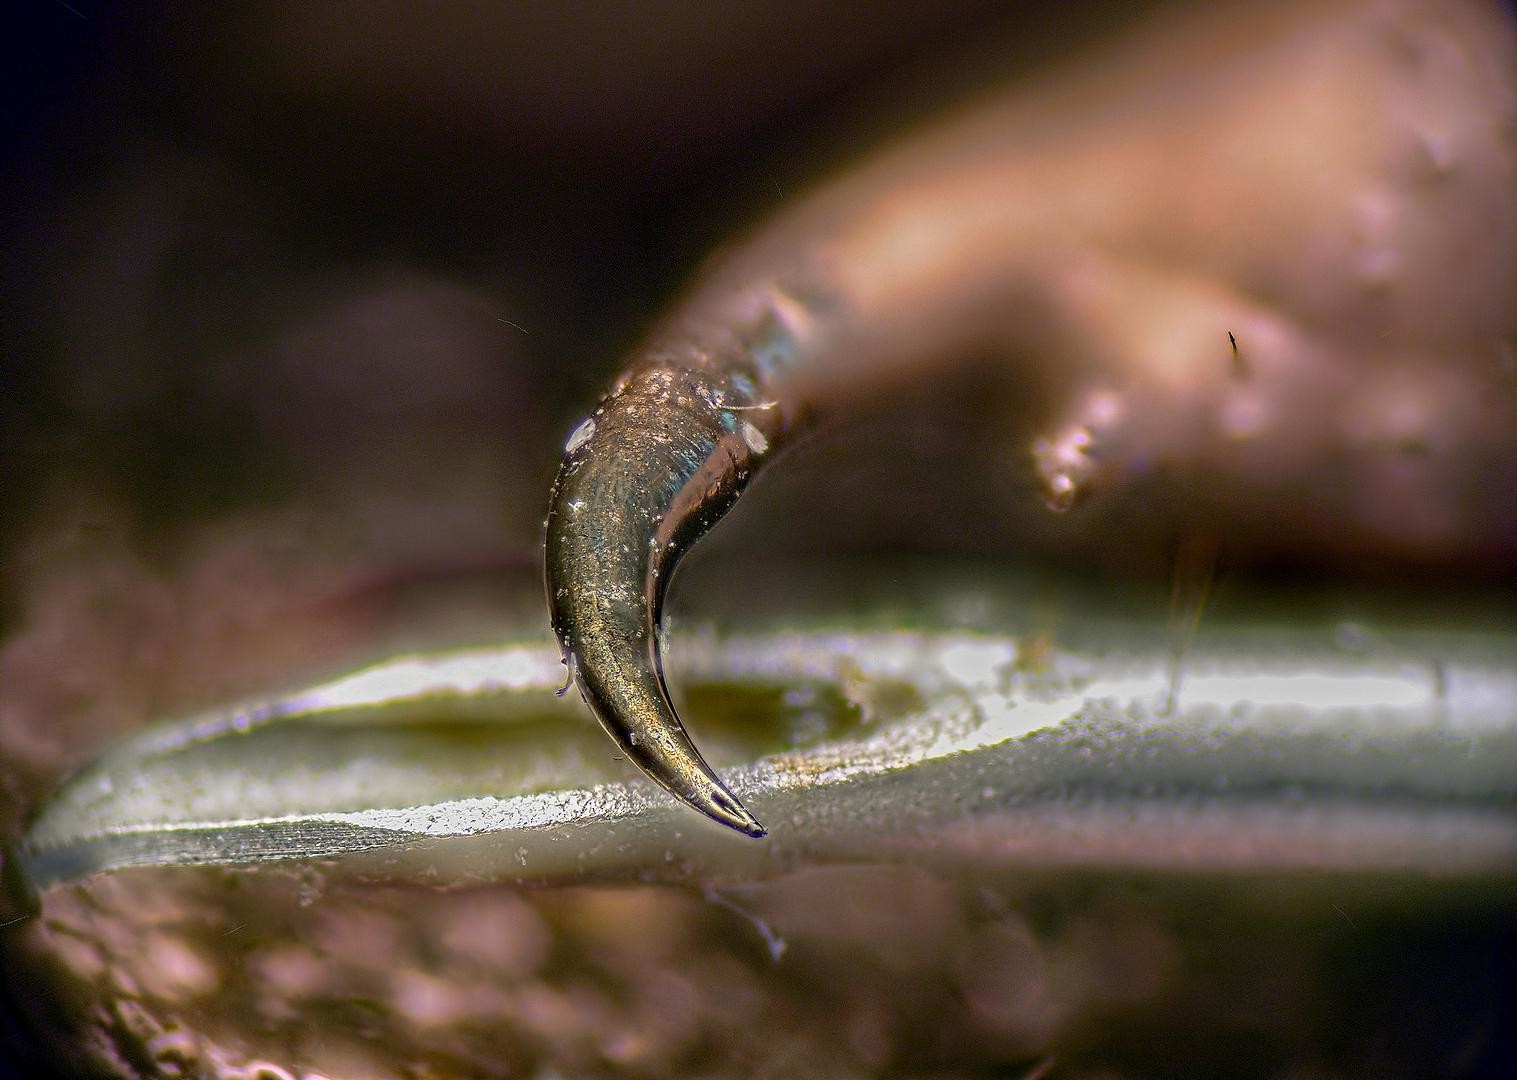 Жало скорпиона под микроскопом (7 фото)